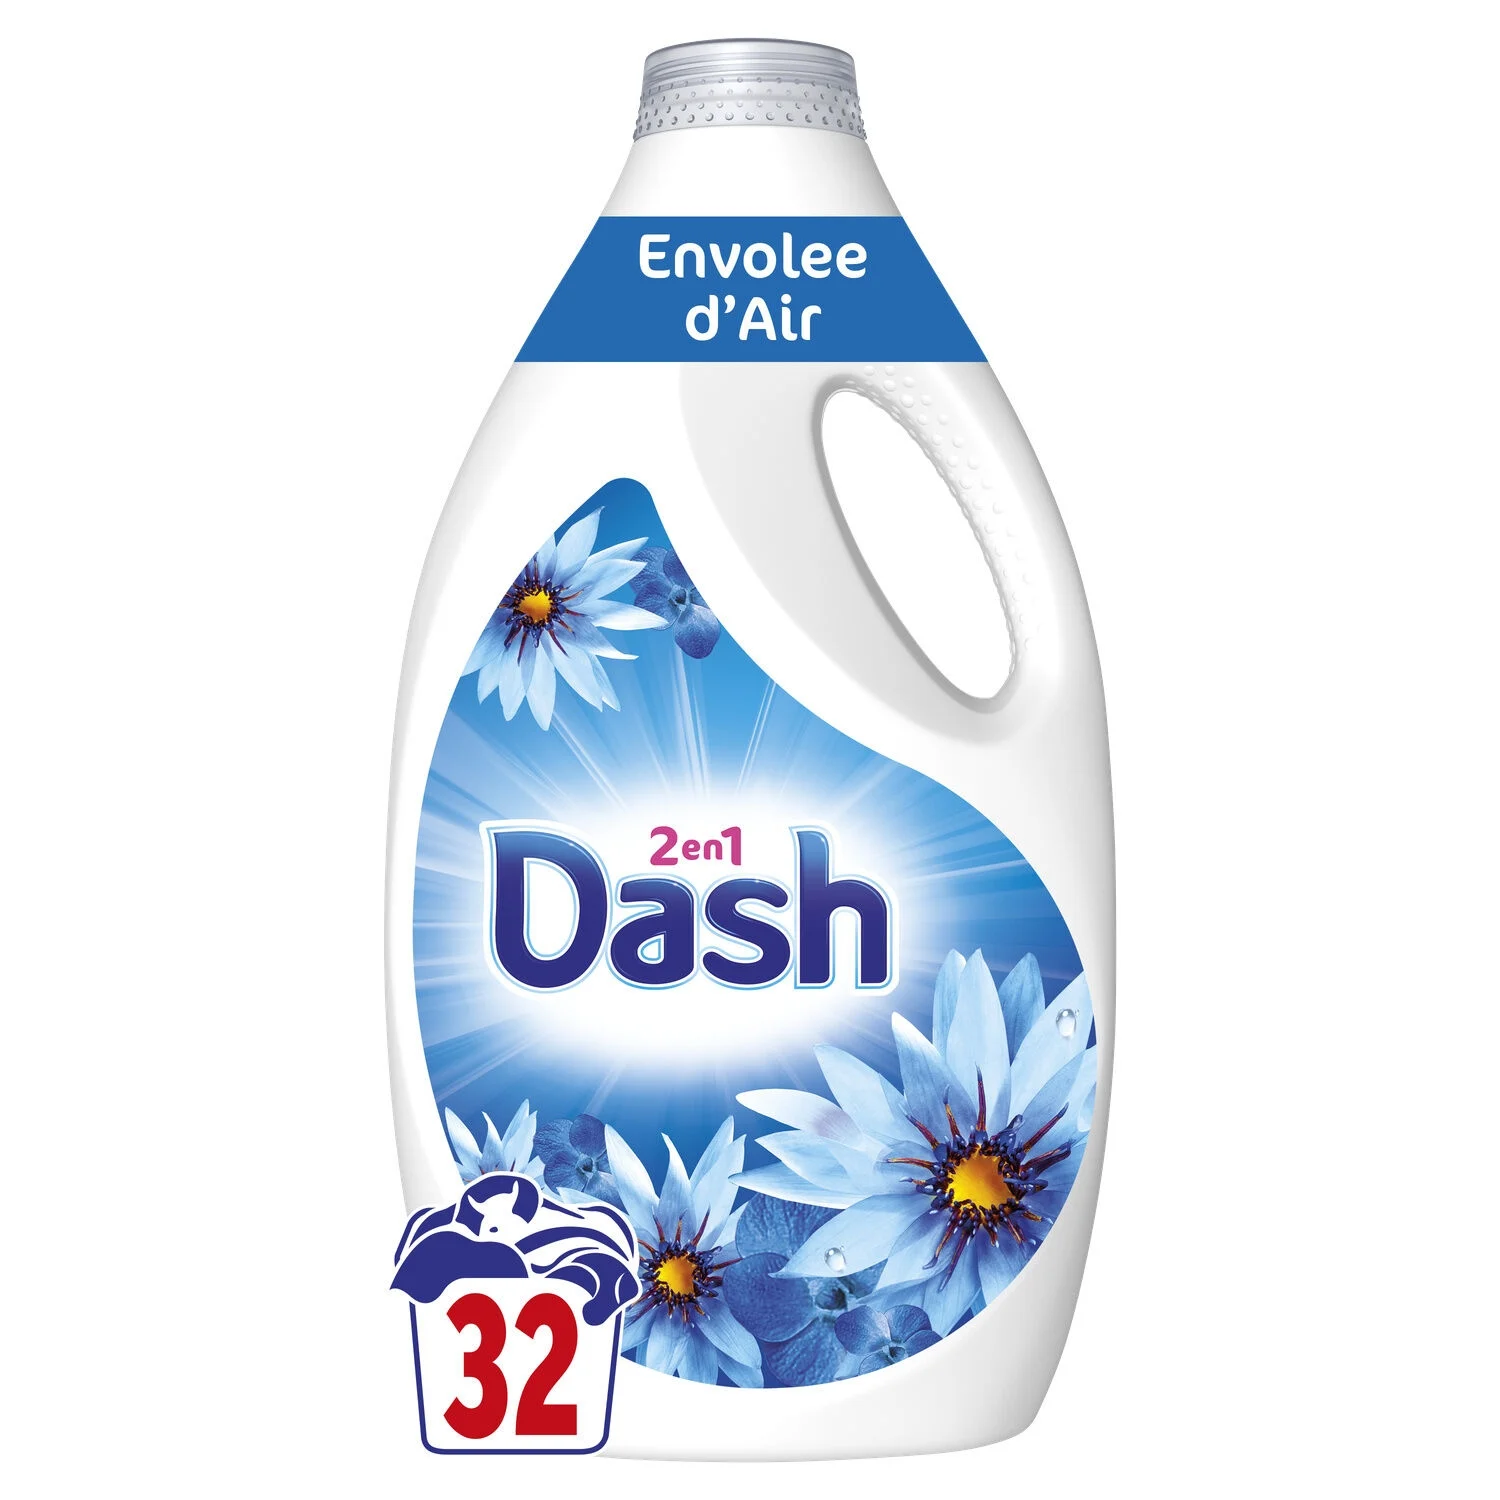 Dash Liquid Envolee D Air 32d